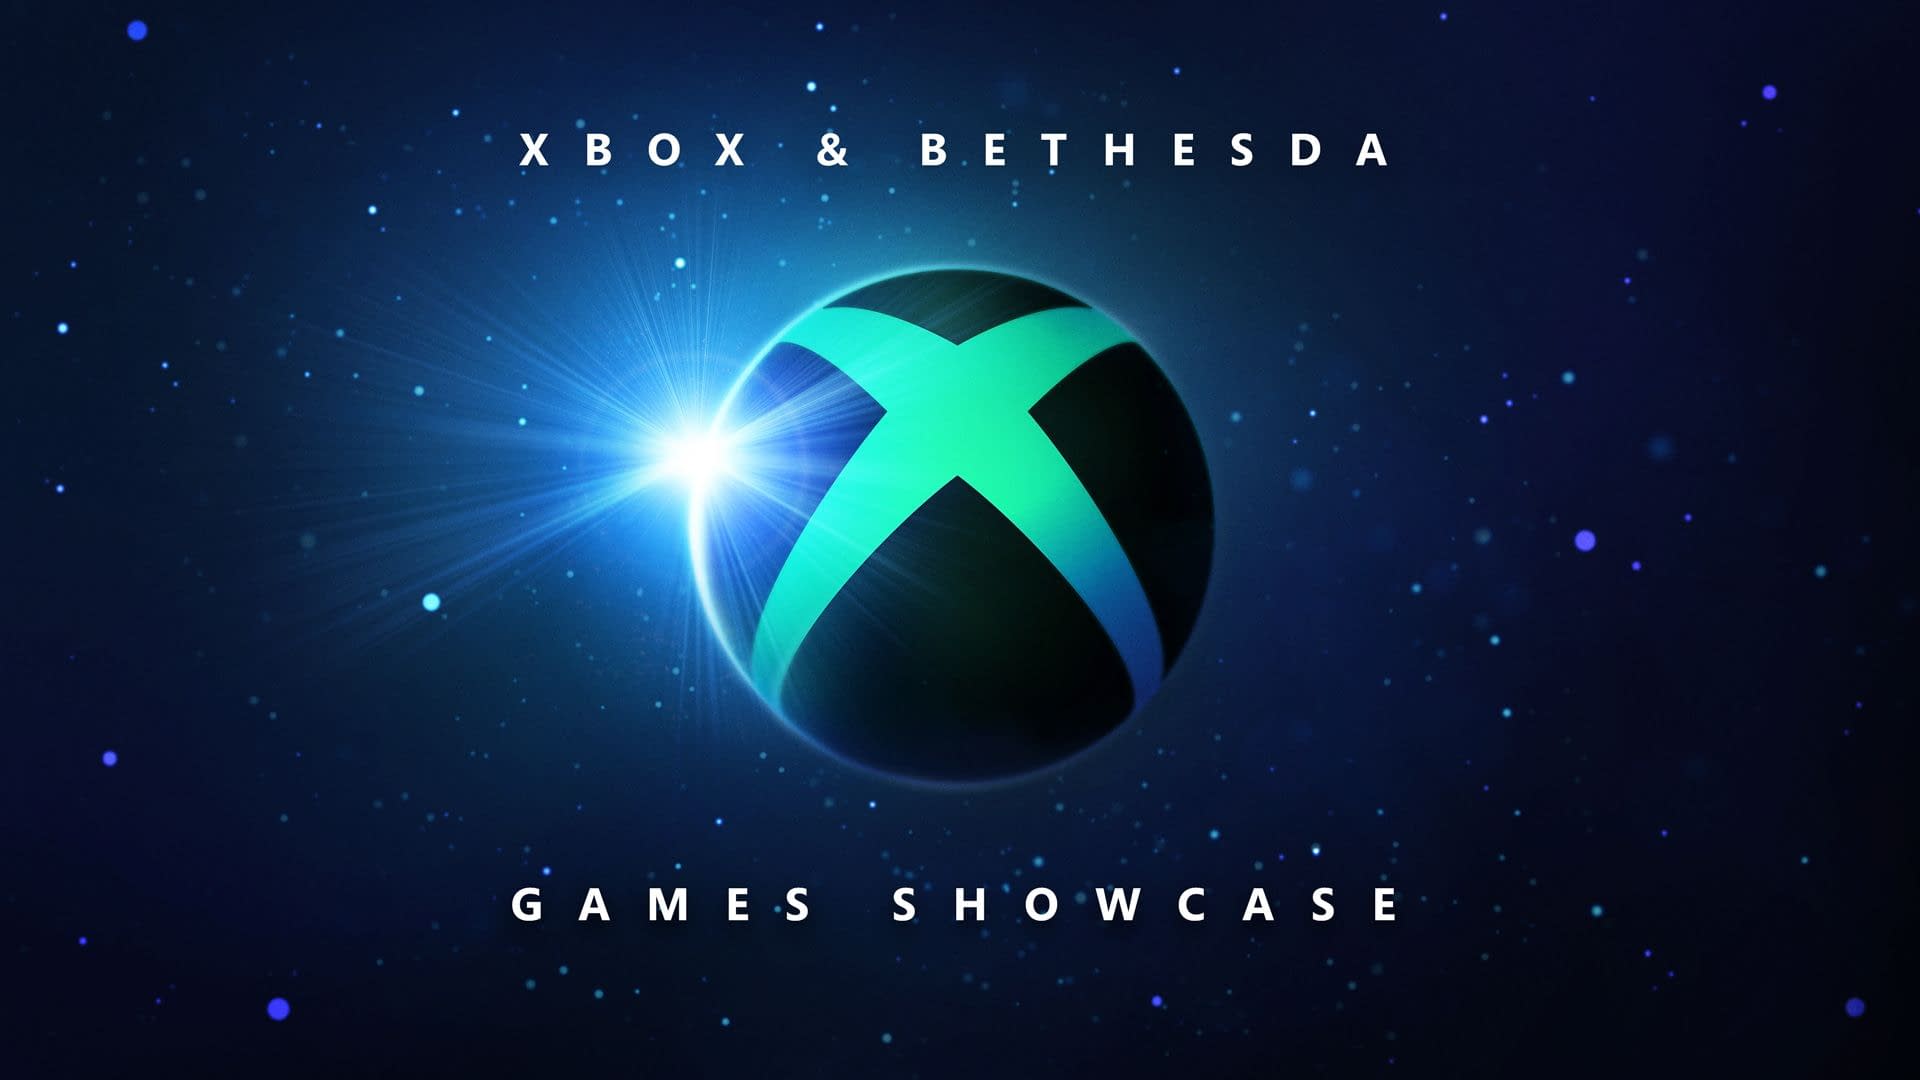 Sự kết hợp đặc biệt giữa Xbox và Bethesda đã đem đến cho bạn thế giới trò chơi điện tử phong phú, đa dạng và đầy sáng tạo. Với nhiều game bom tấn như Fallout, Doom hay Elder Scrolls, không chỉ giải trí mà còn thử thách trí thông minh và kỹ năng của bạn. Hãy cùng đắm mình trong những hình ảnh gây cấn và ấn tượng từ Xbox và Bethesda!